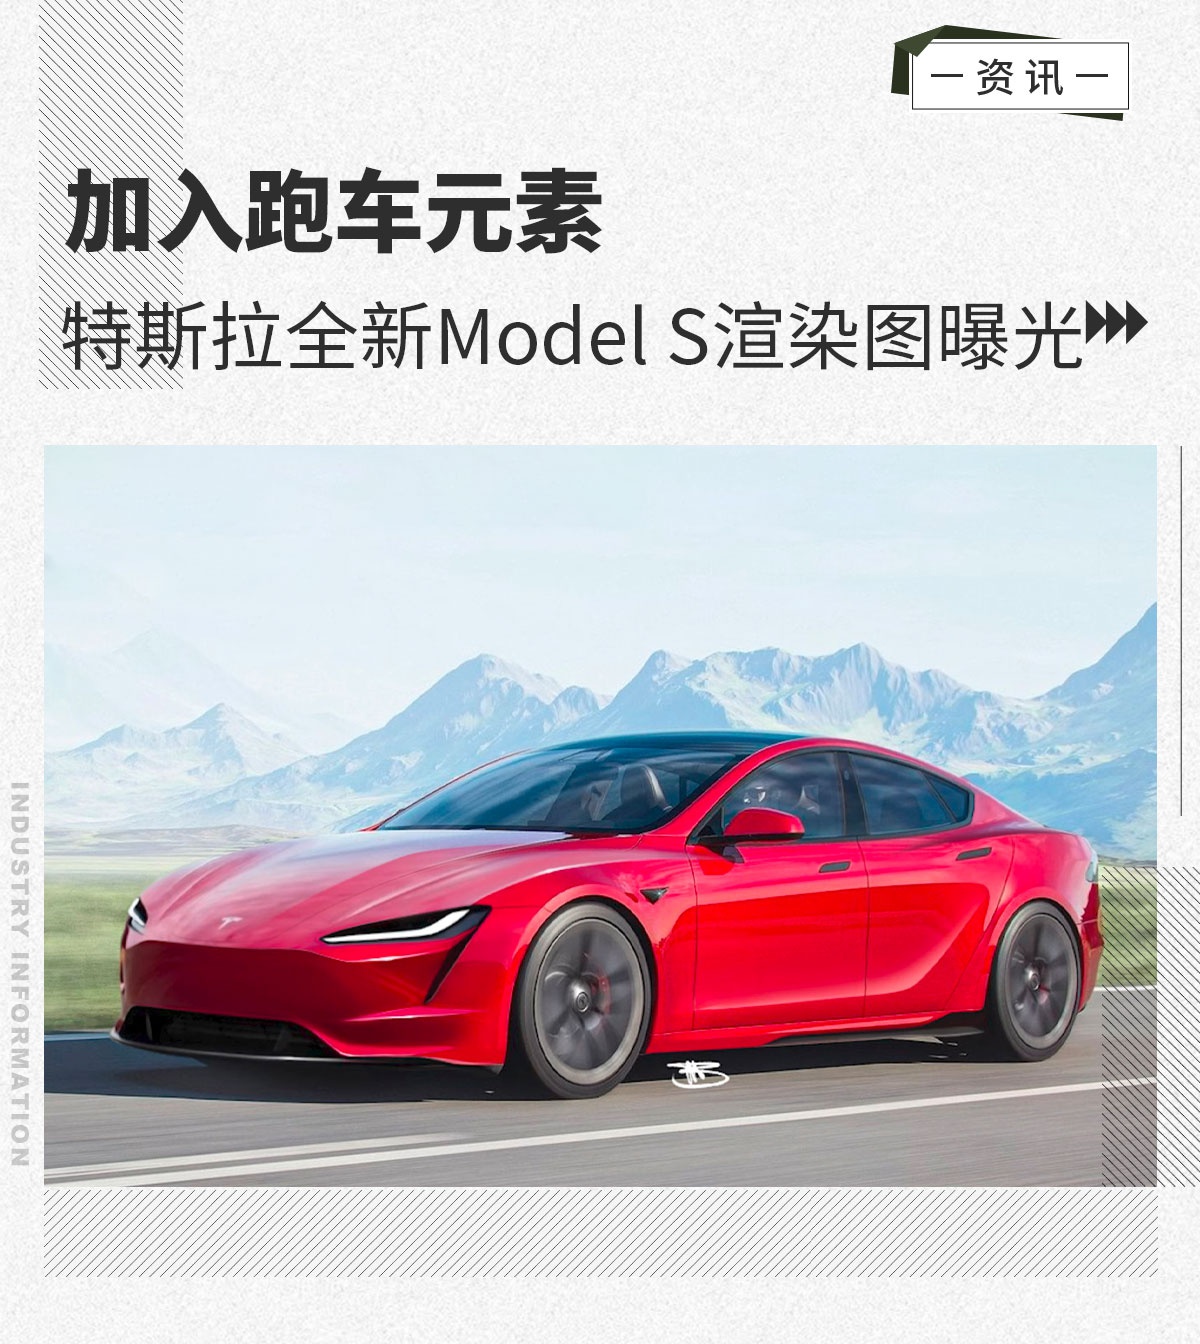 加入跑车元素 特斯拉全新一代Model S渲染图曝光